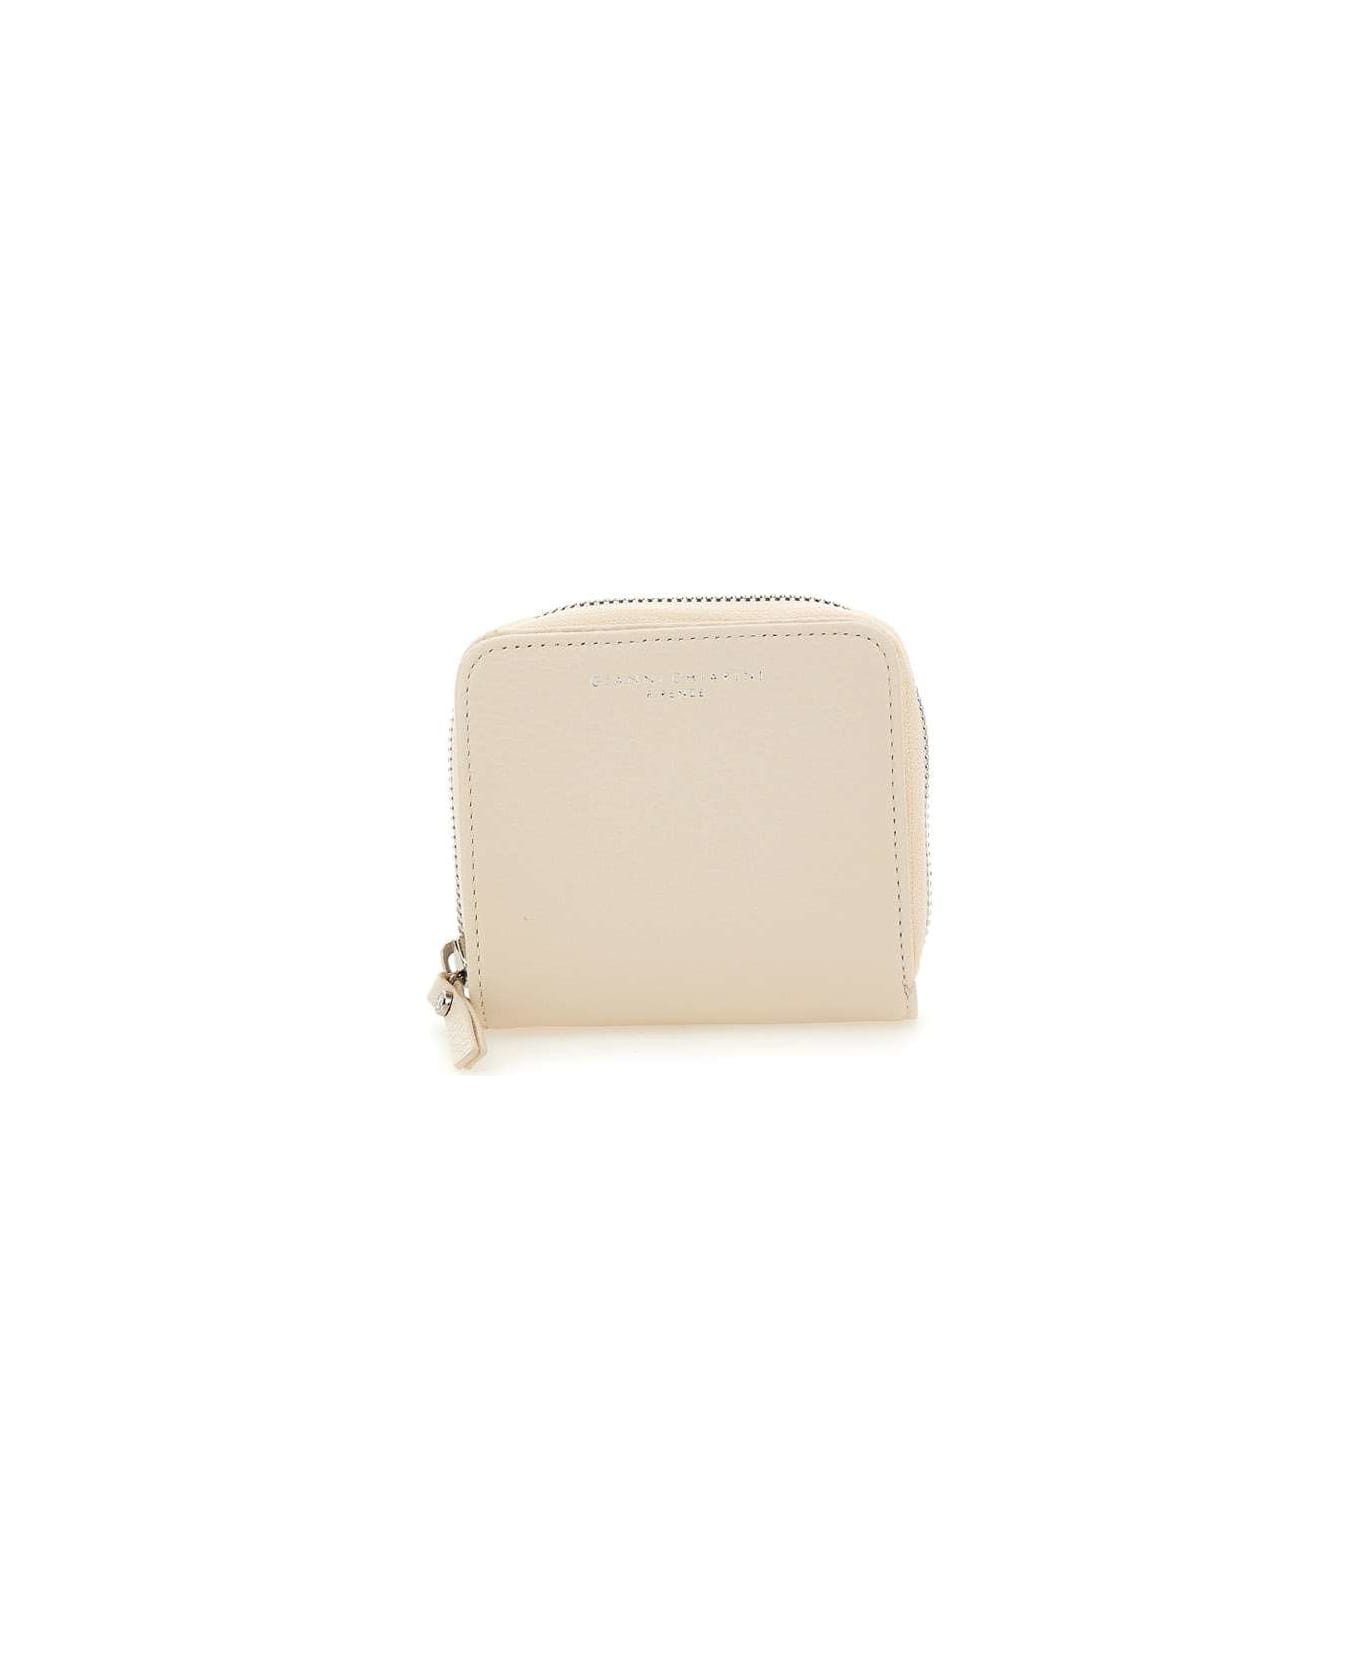 Gianni Chiarini Leather Wallet - WHITE